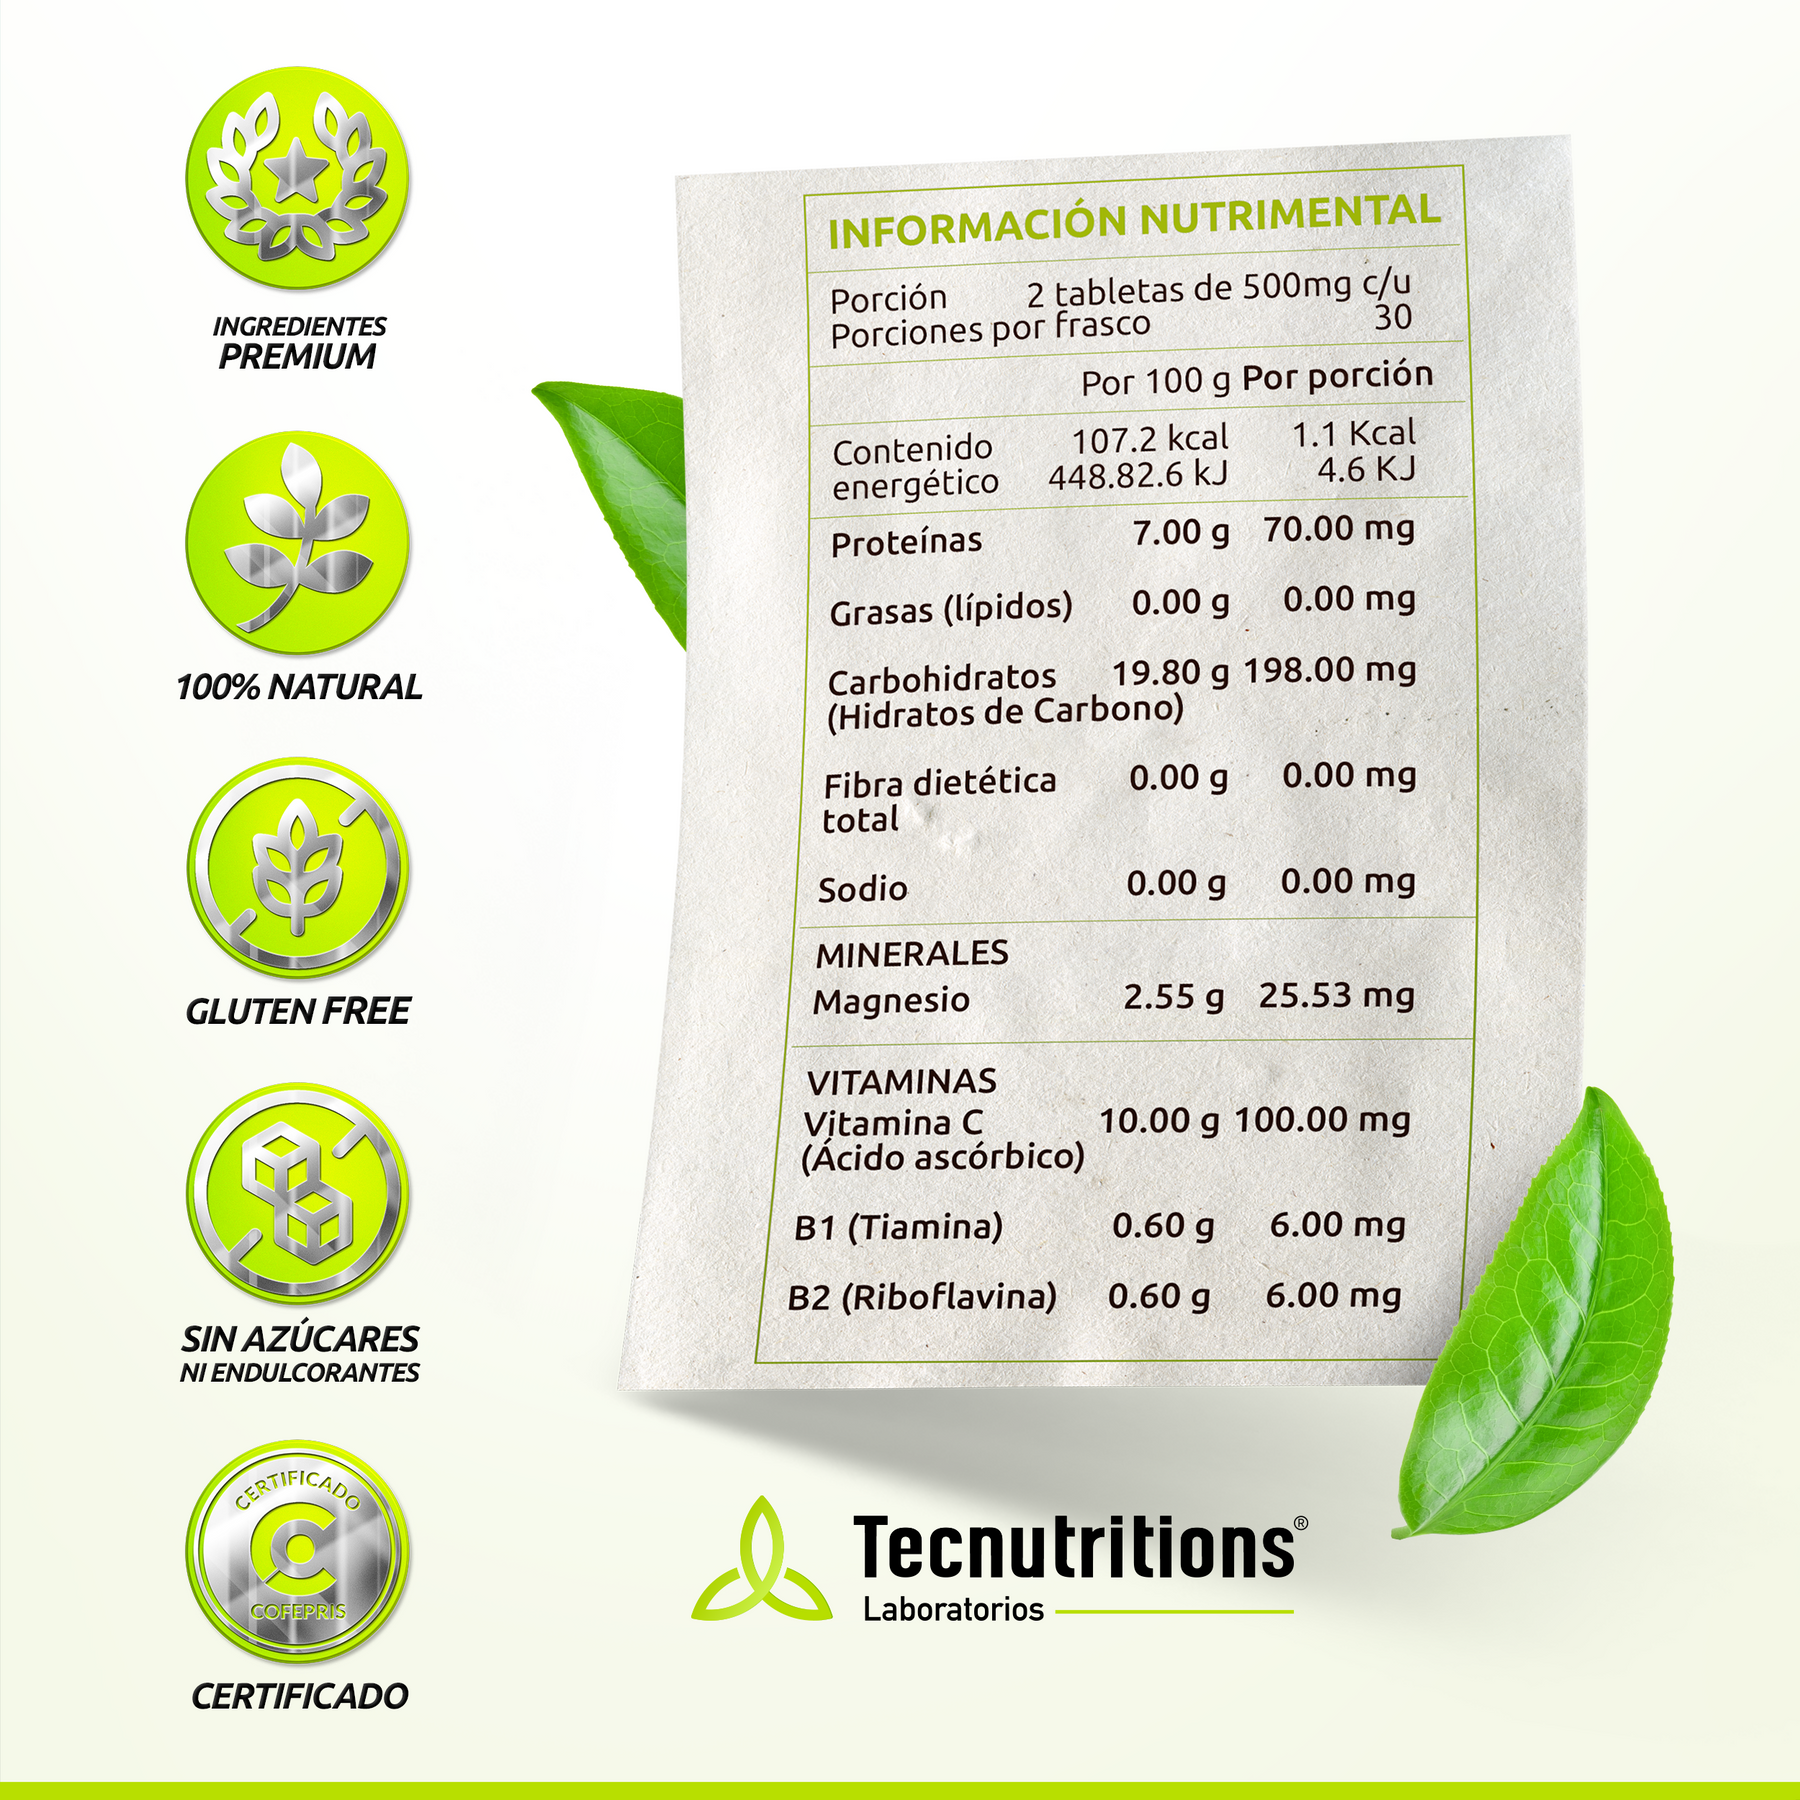 Suplemento alimenticio Tiam 300, 60 tabs, con Tiamina, café verde, desvelos, fatiga